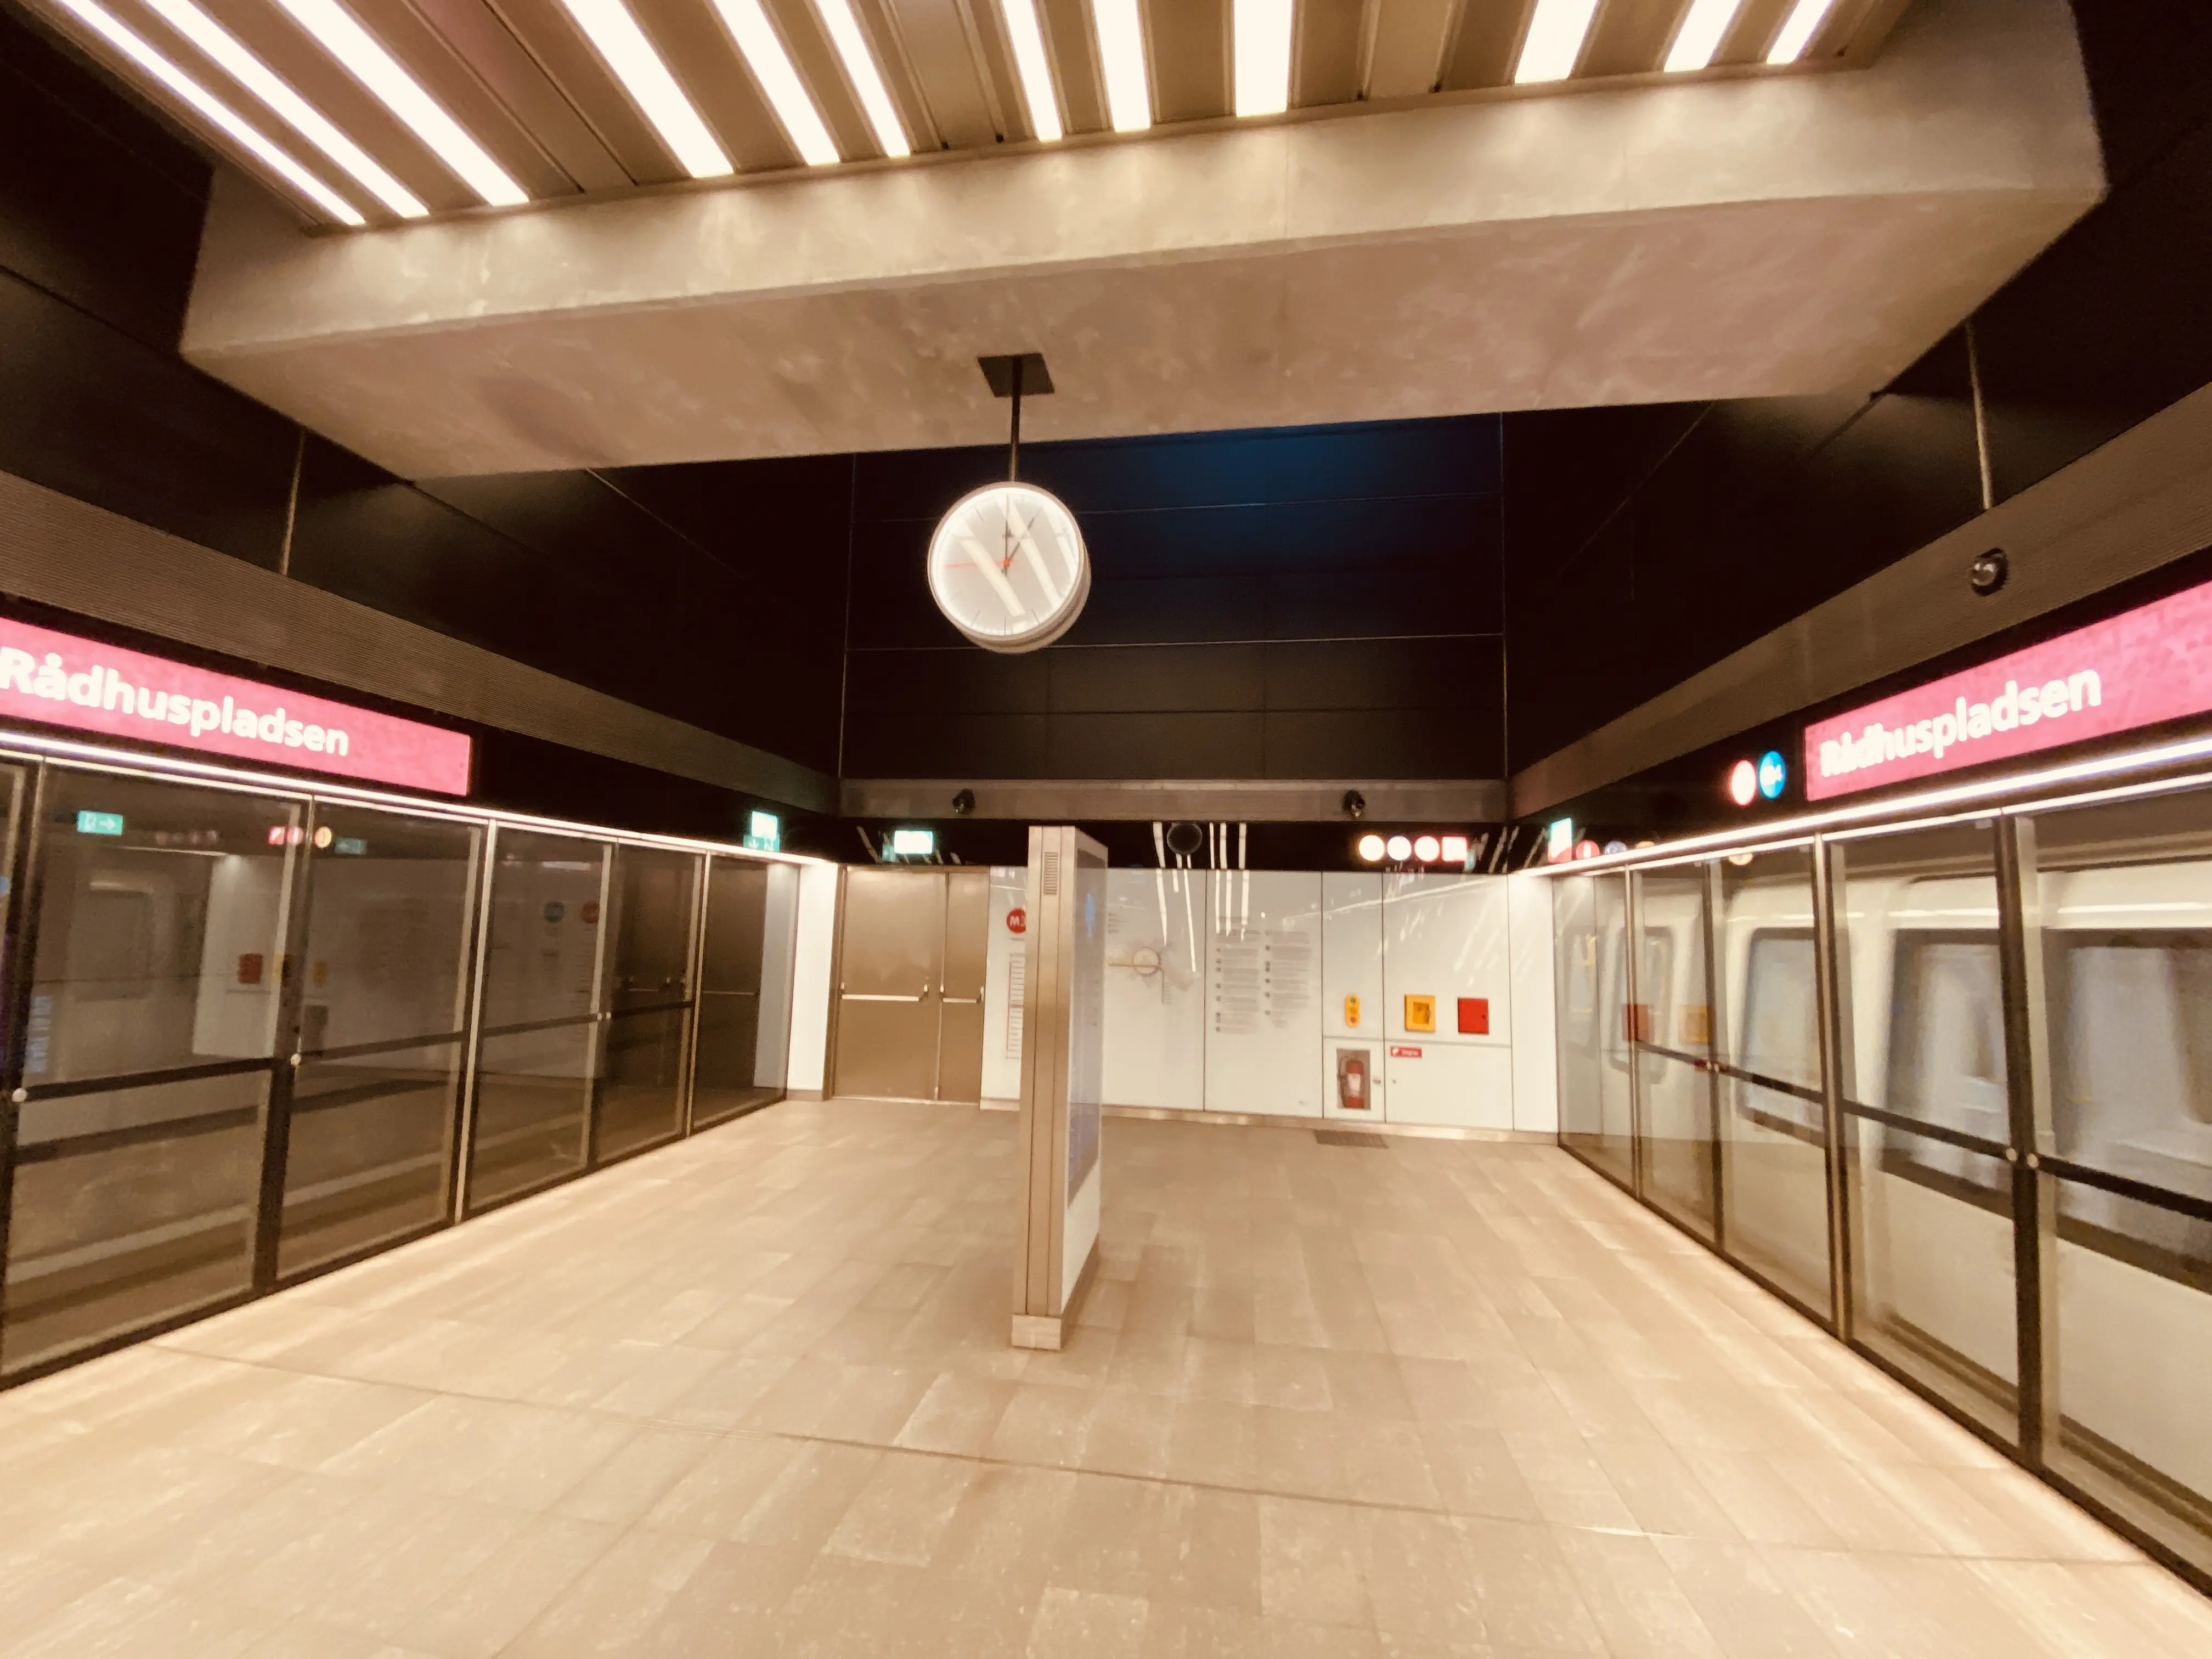 Billede af Rådhuspladsen Metrostation.